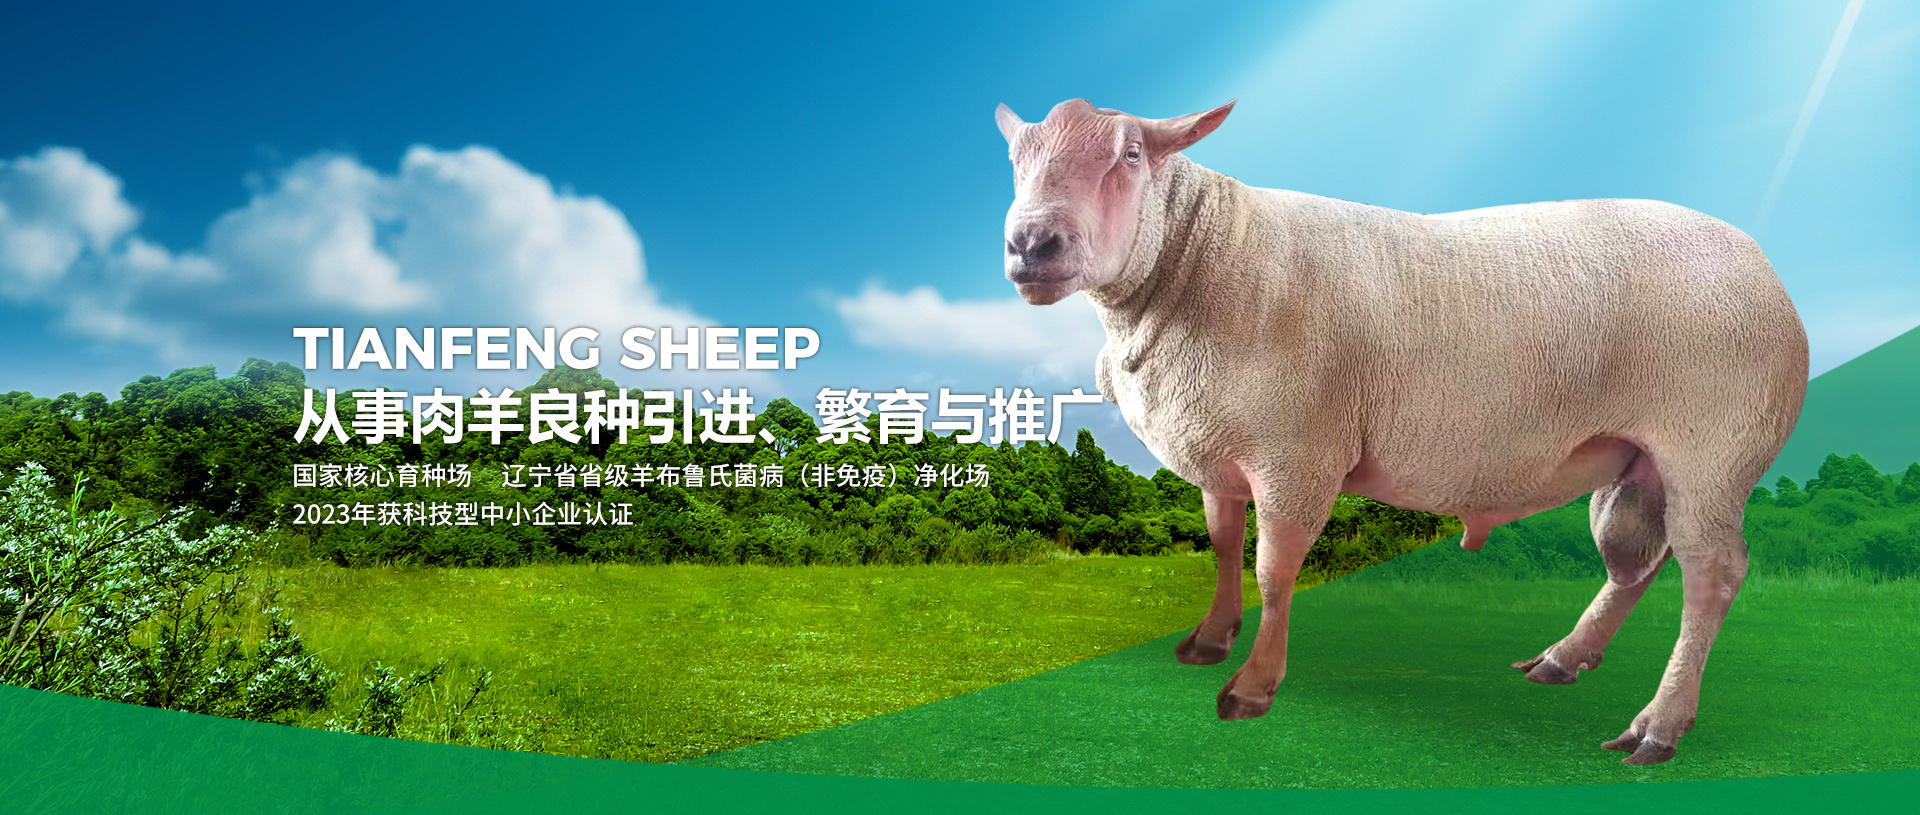 彰武县天丰种羊养殖有限公司